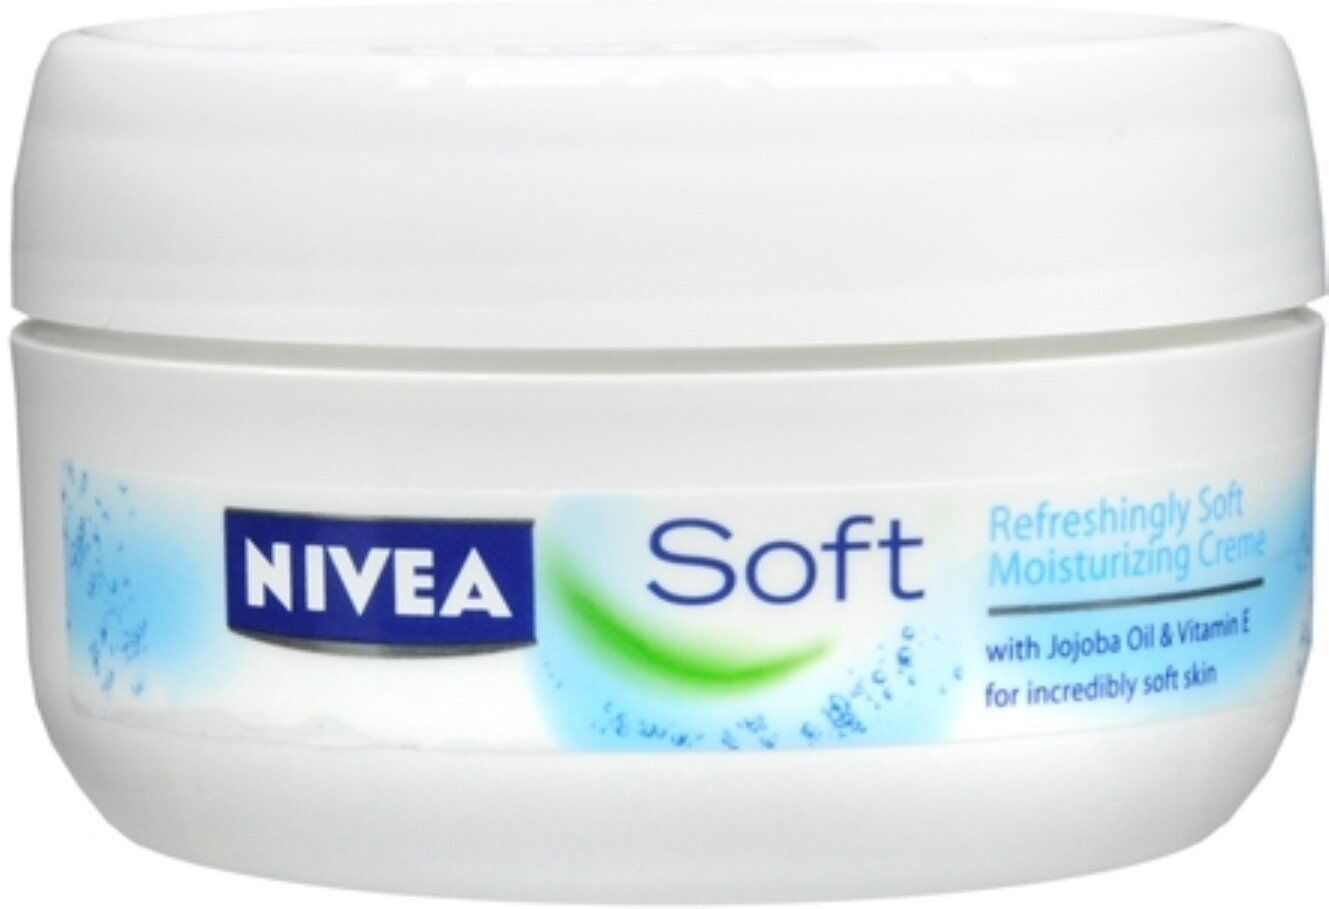 Nivea Soft Moisturizing Creme Refreshing Jojoba Oil & Vitamin E Formula 6.8 oz